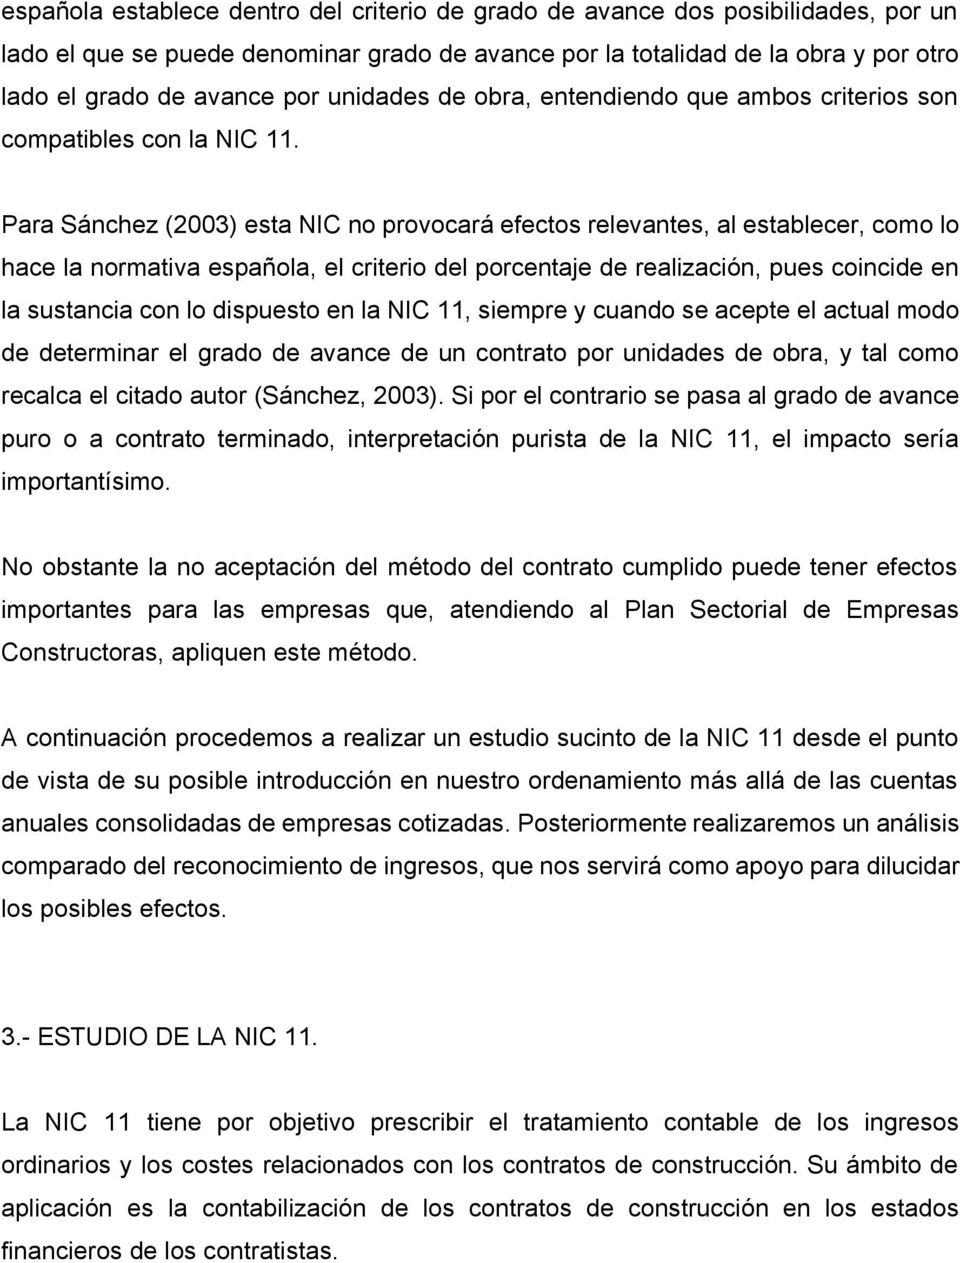 Para Sánchez (2003) esta NIC no provocará efectos relevantes, al establecer, como lo hace la normativa española, el criterio del porcentaje de realización, pues coincide en la sustancia con lo